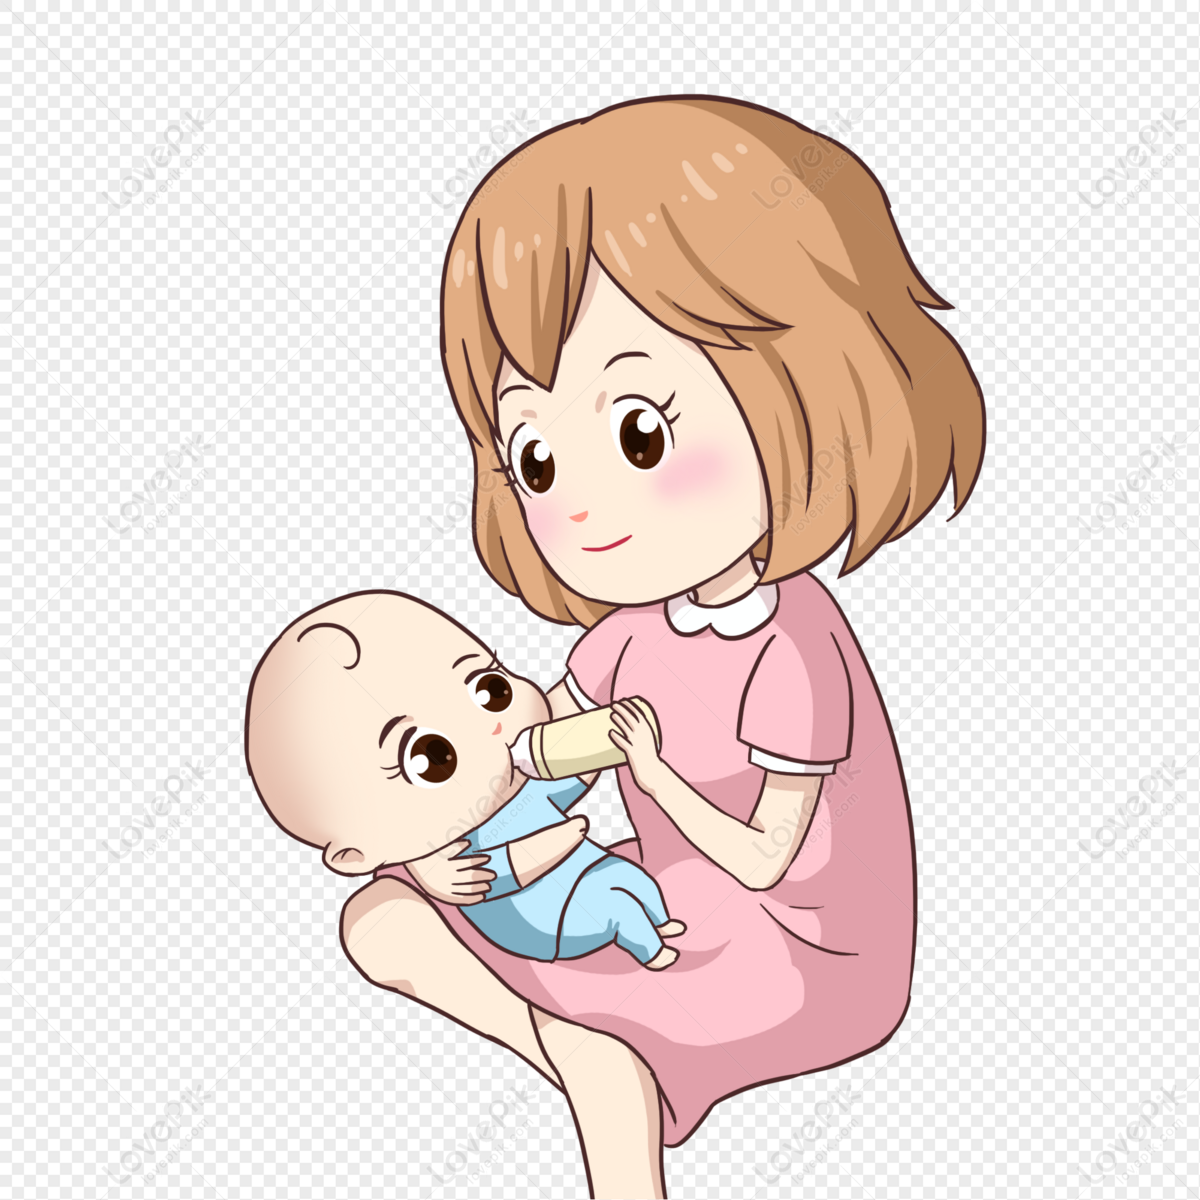 कार्टून मां और बच्चे को गोद में लिए हुए बच्चे चित्र  डाउनलोड_ग्राफिक्सPRFचित्र आईडी401565263_PSDचित्र  प्रारूपमुफ्त की तस्वीर